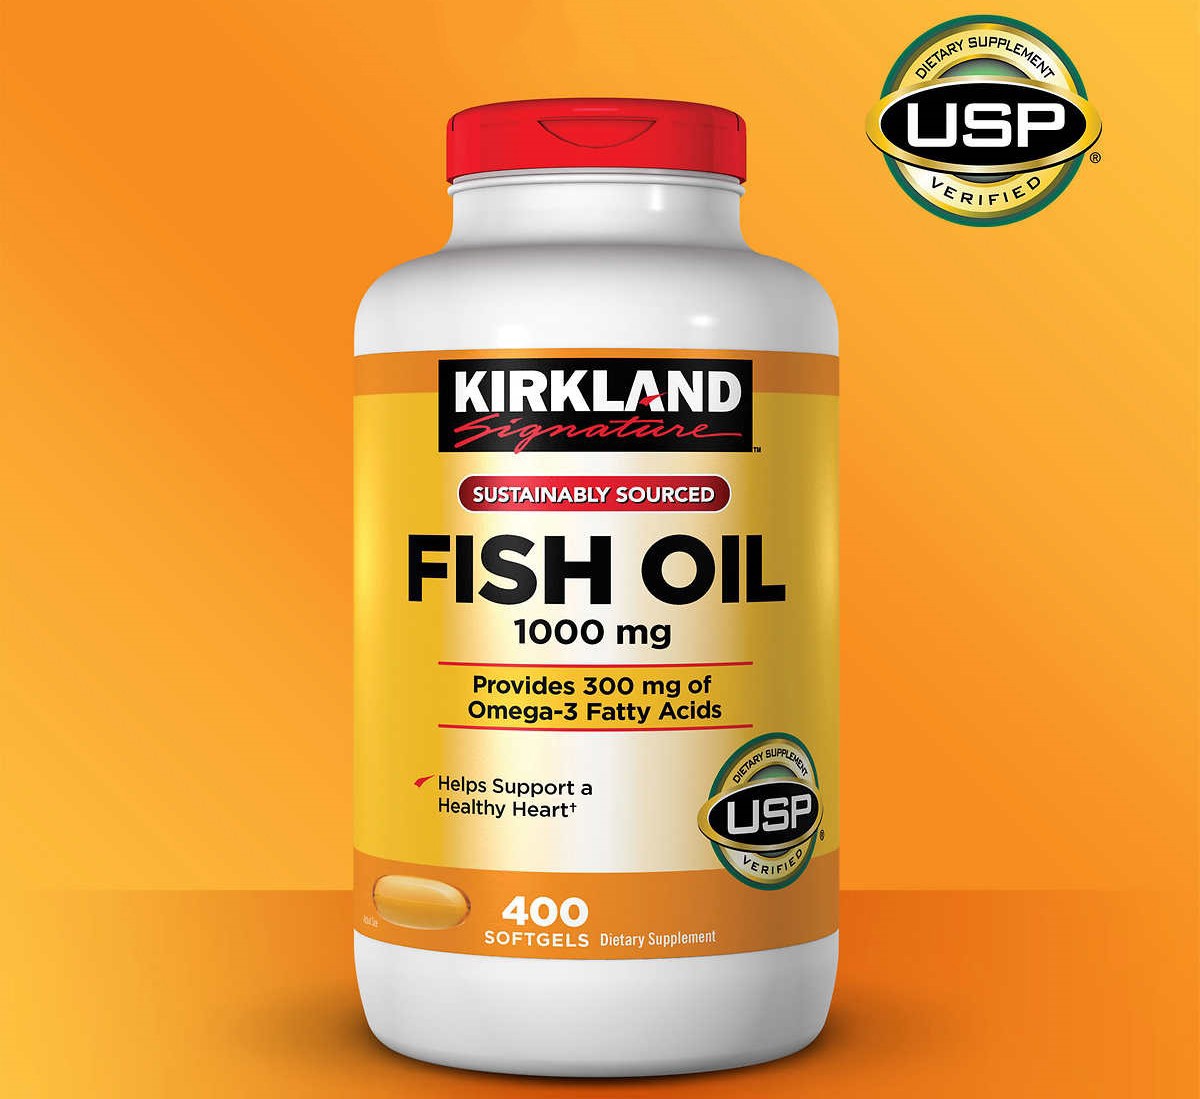 Kirkland Fish Oil chính hãng có ký hiệu USP ở góc trái sản phẩm